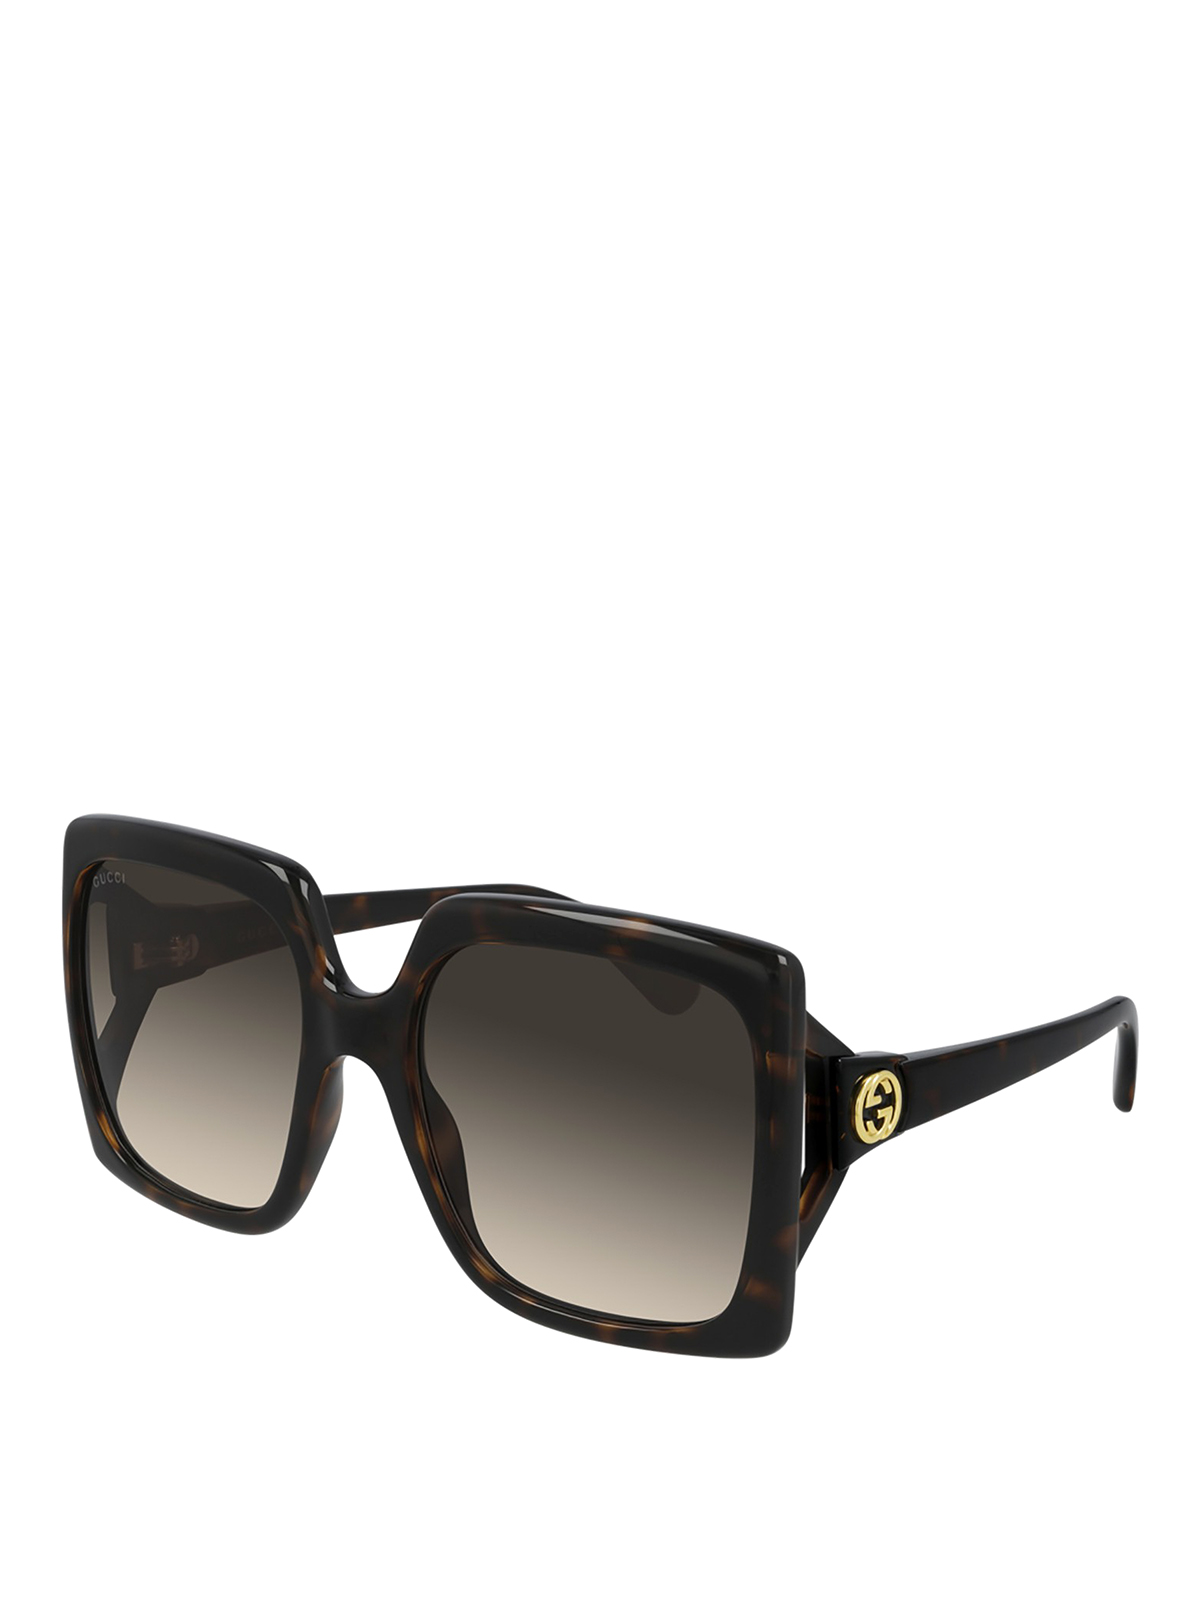 Gucci Squared Sunglasses In Brown